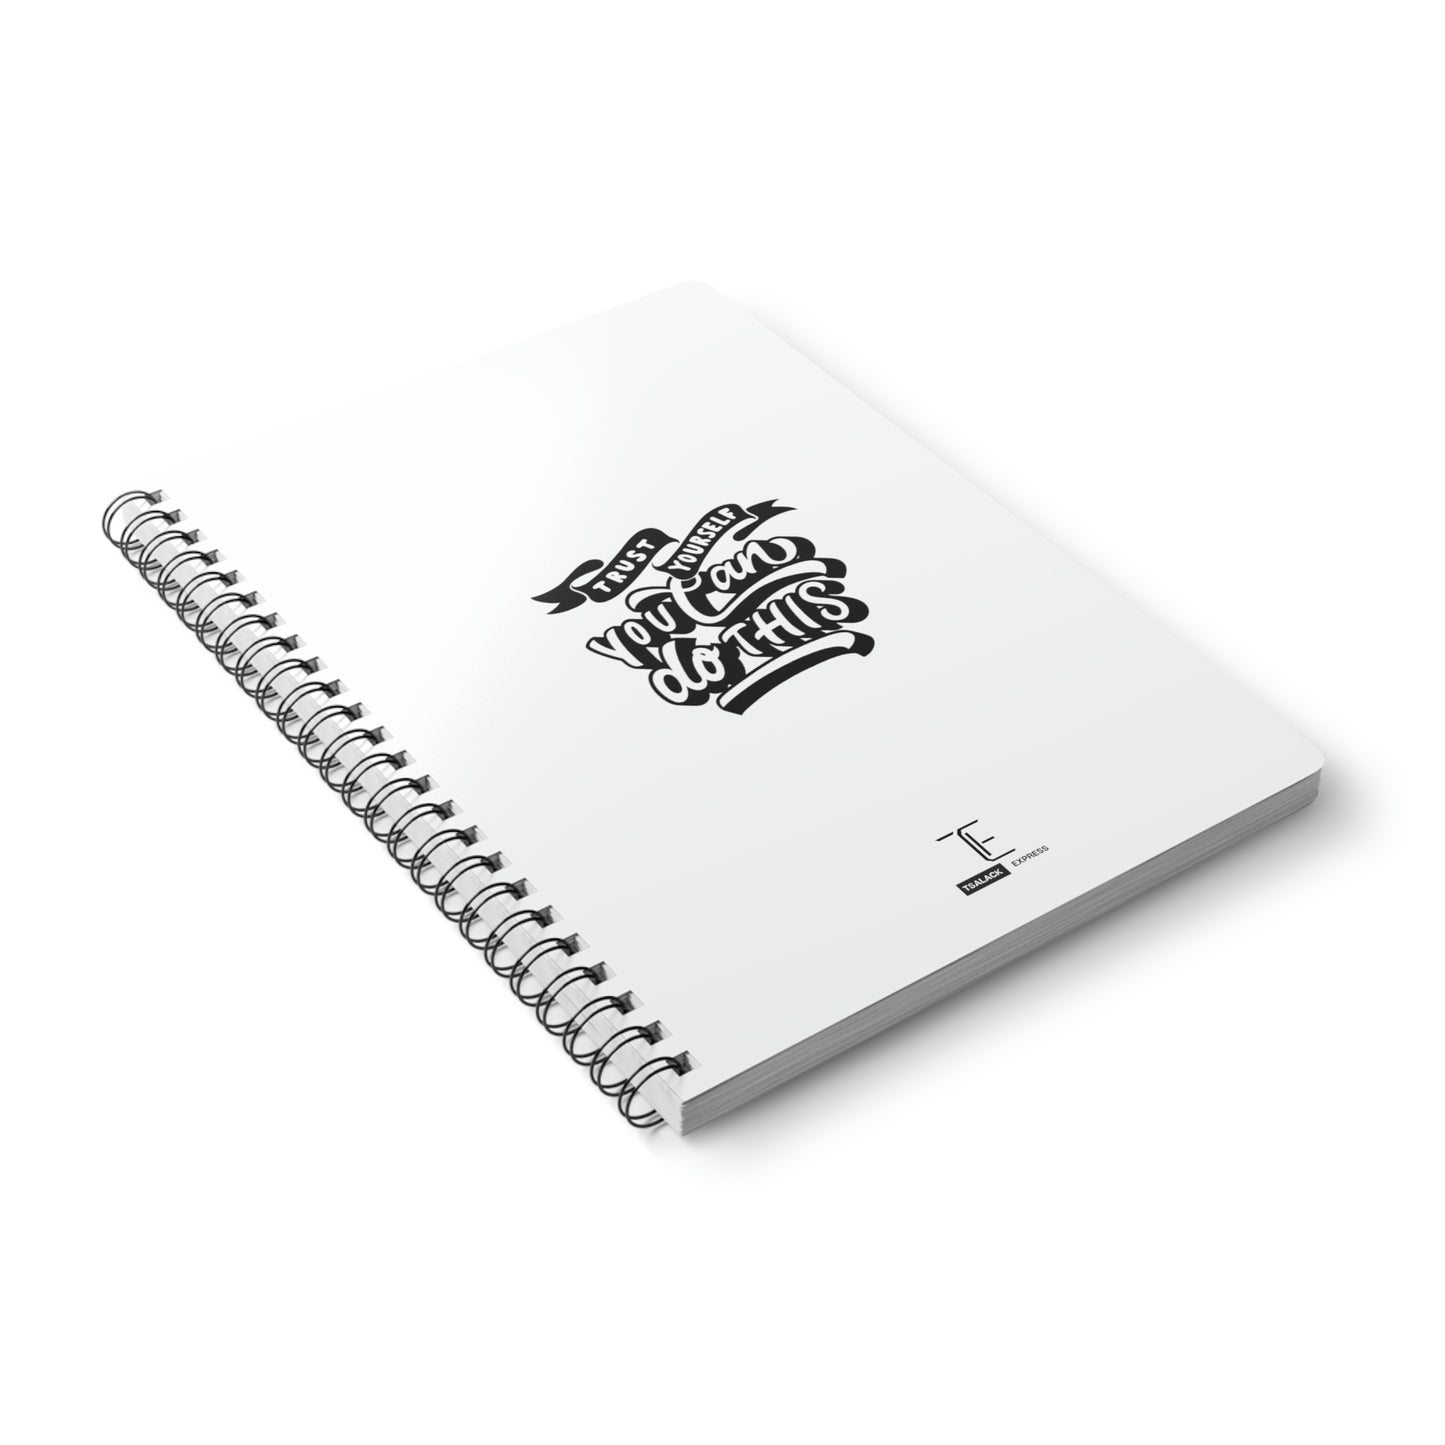 Tsalack Express Insp Wirobound Softcover Notebook, A5